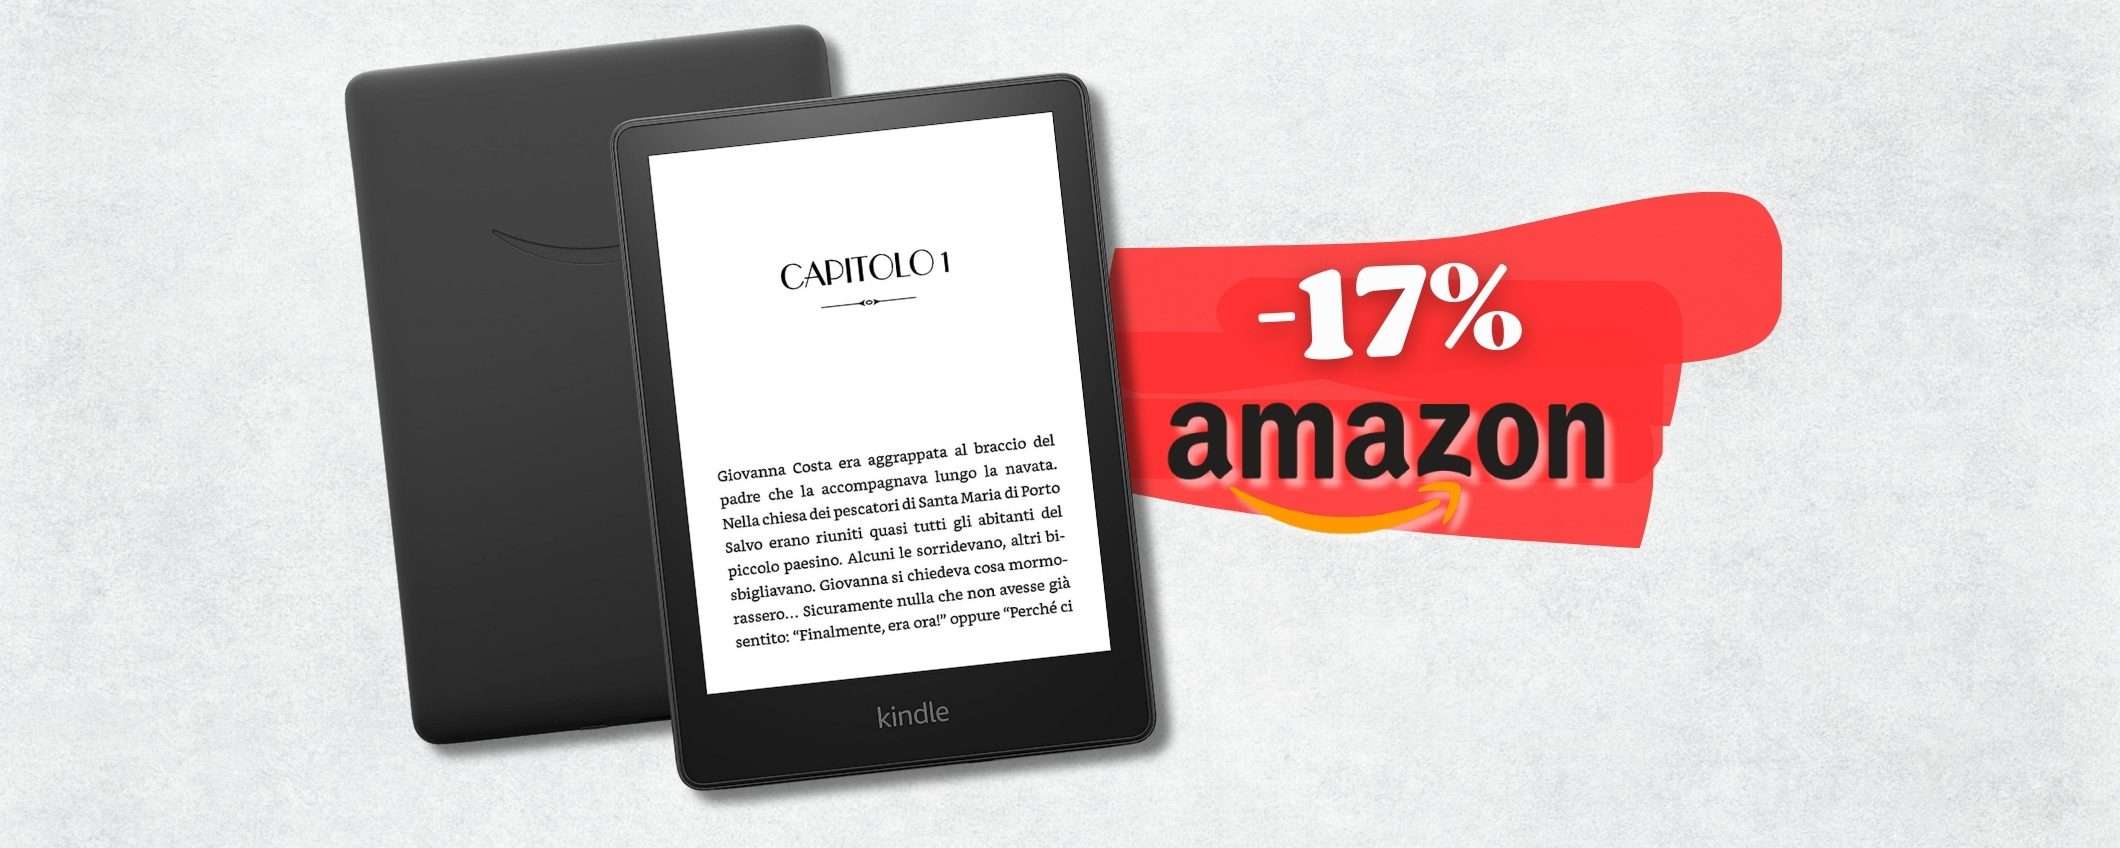 Kindle Paperwhite 16GB per leggere anche in vacanza senza freni (-17%)